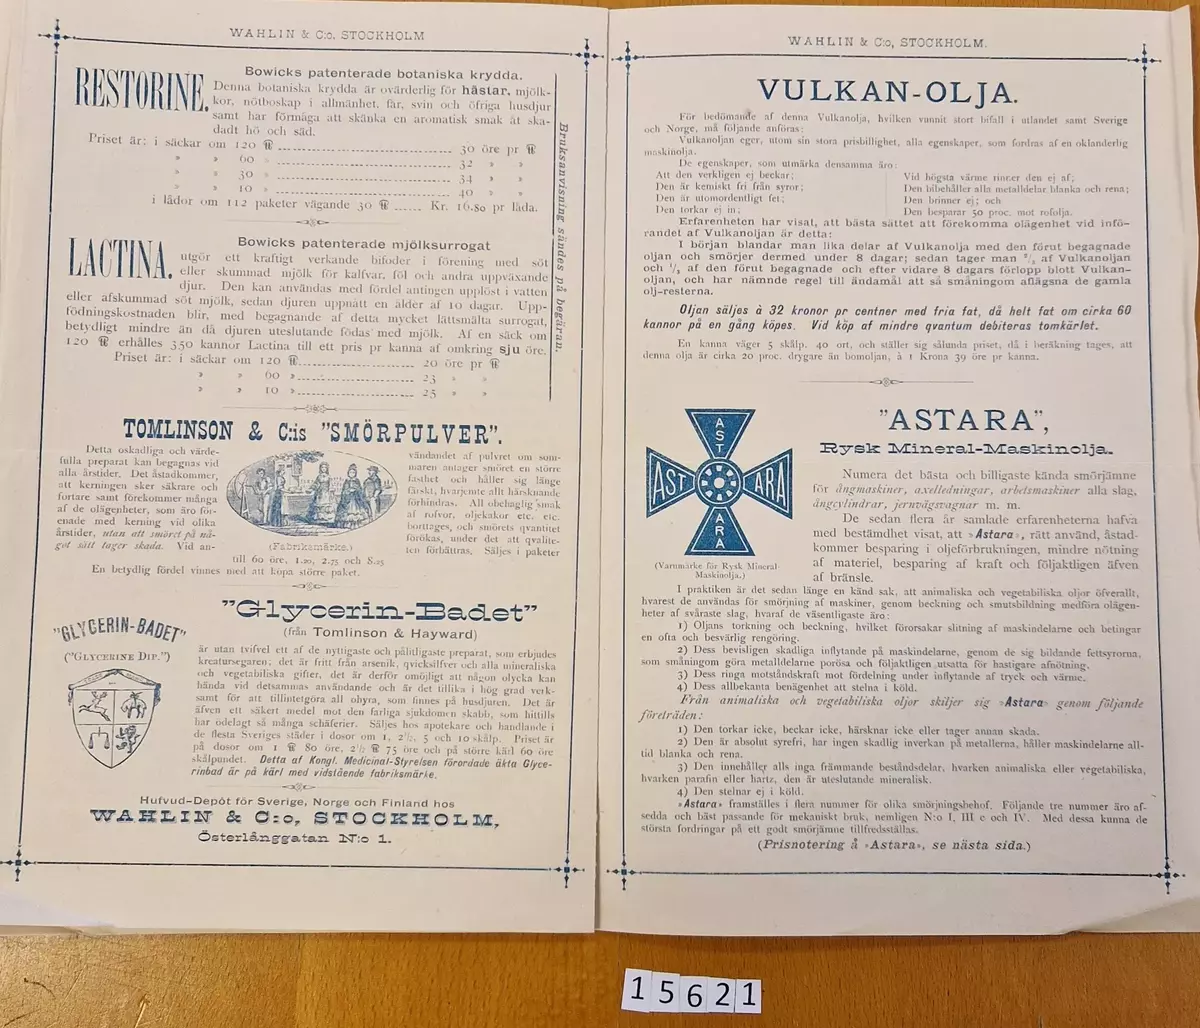 1886 års Vår- Priskurant från Wahlin & Co, Stockholm. Kontor: Österlånggatan N:o 1 och Norra Blasieholmshamnen N:o 7. Tryckt hos Central- Tryckeriet, Stockholm.